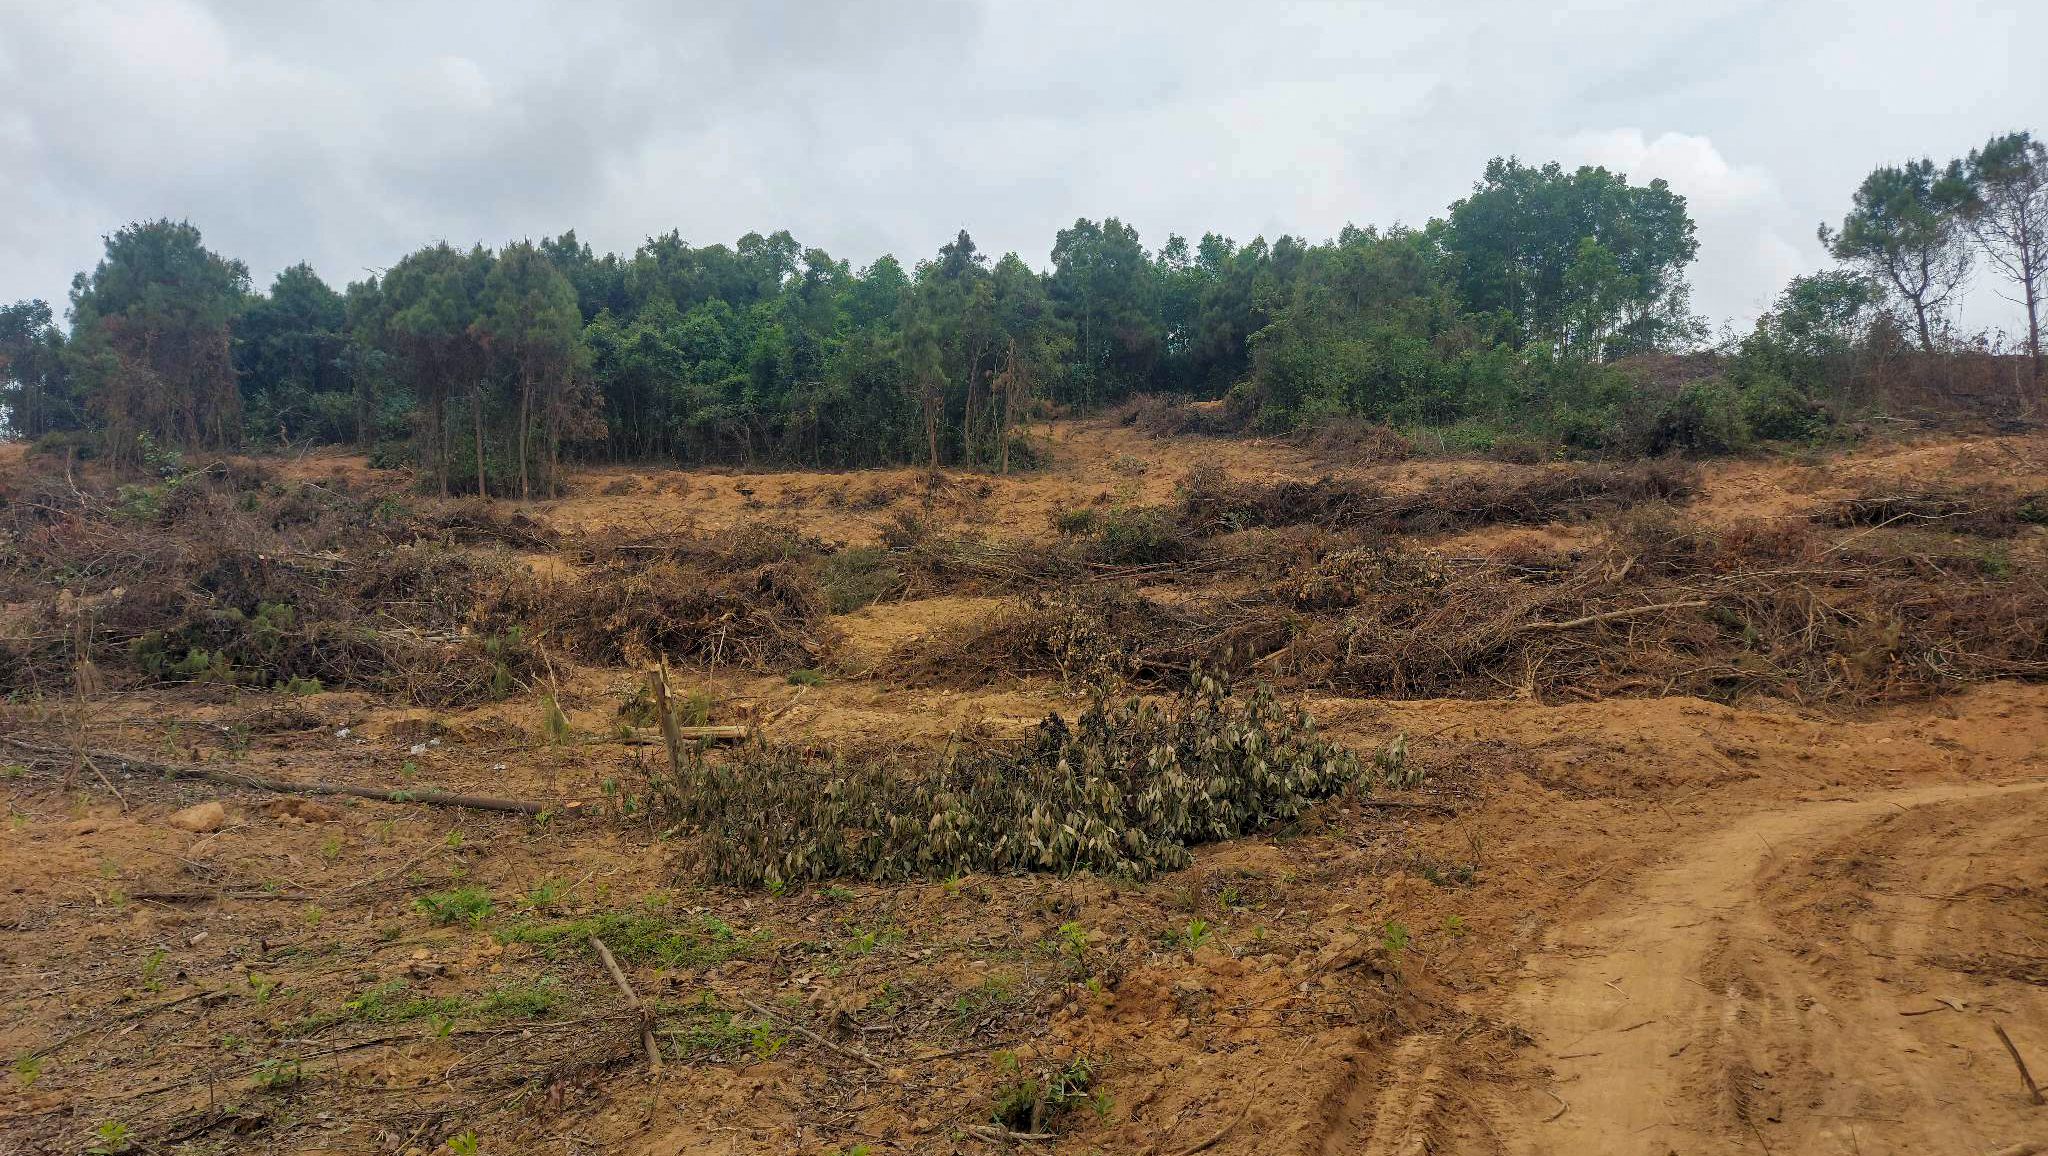 Hiện trường vùng rừng thông, keo thuộc lô 1, khoảnh 3, tiểu khu 343B bị phá hoại.